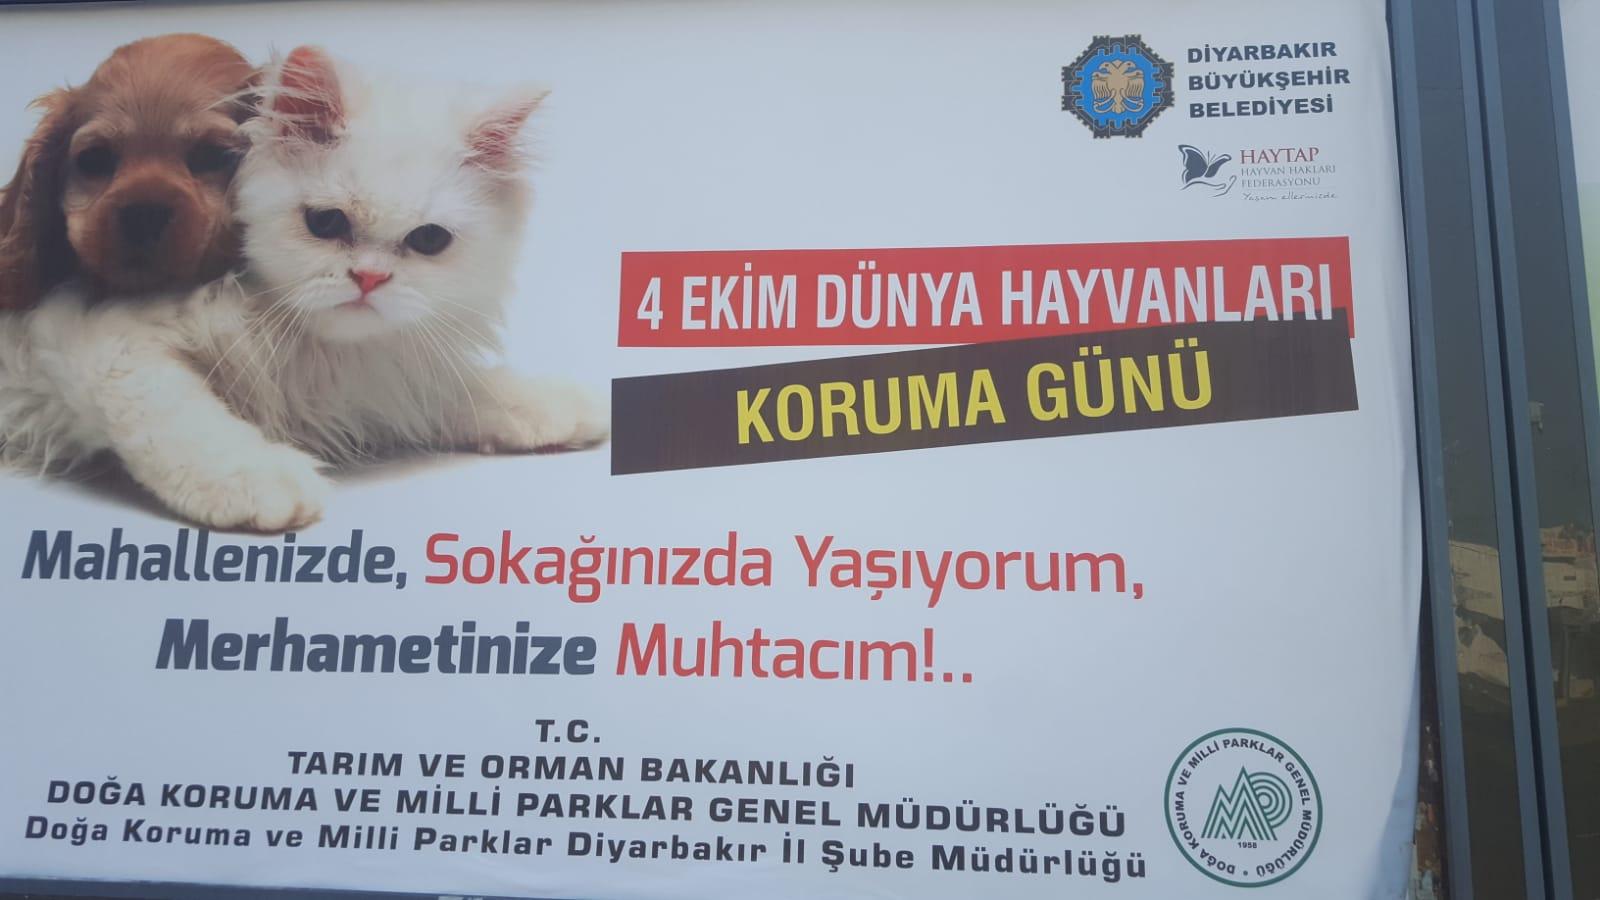 Haytap Billboardlari Diyarbakir Caddelerinde Devlet Kurumlari Ve Haytap Haytap In Arkadaslari Haytap Hayvan Haklari Federasyonu